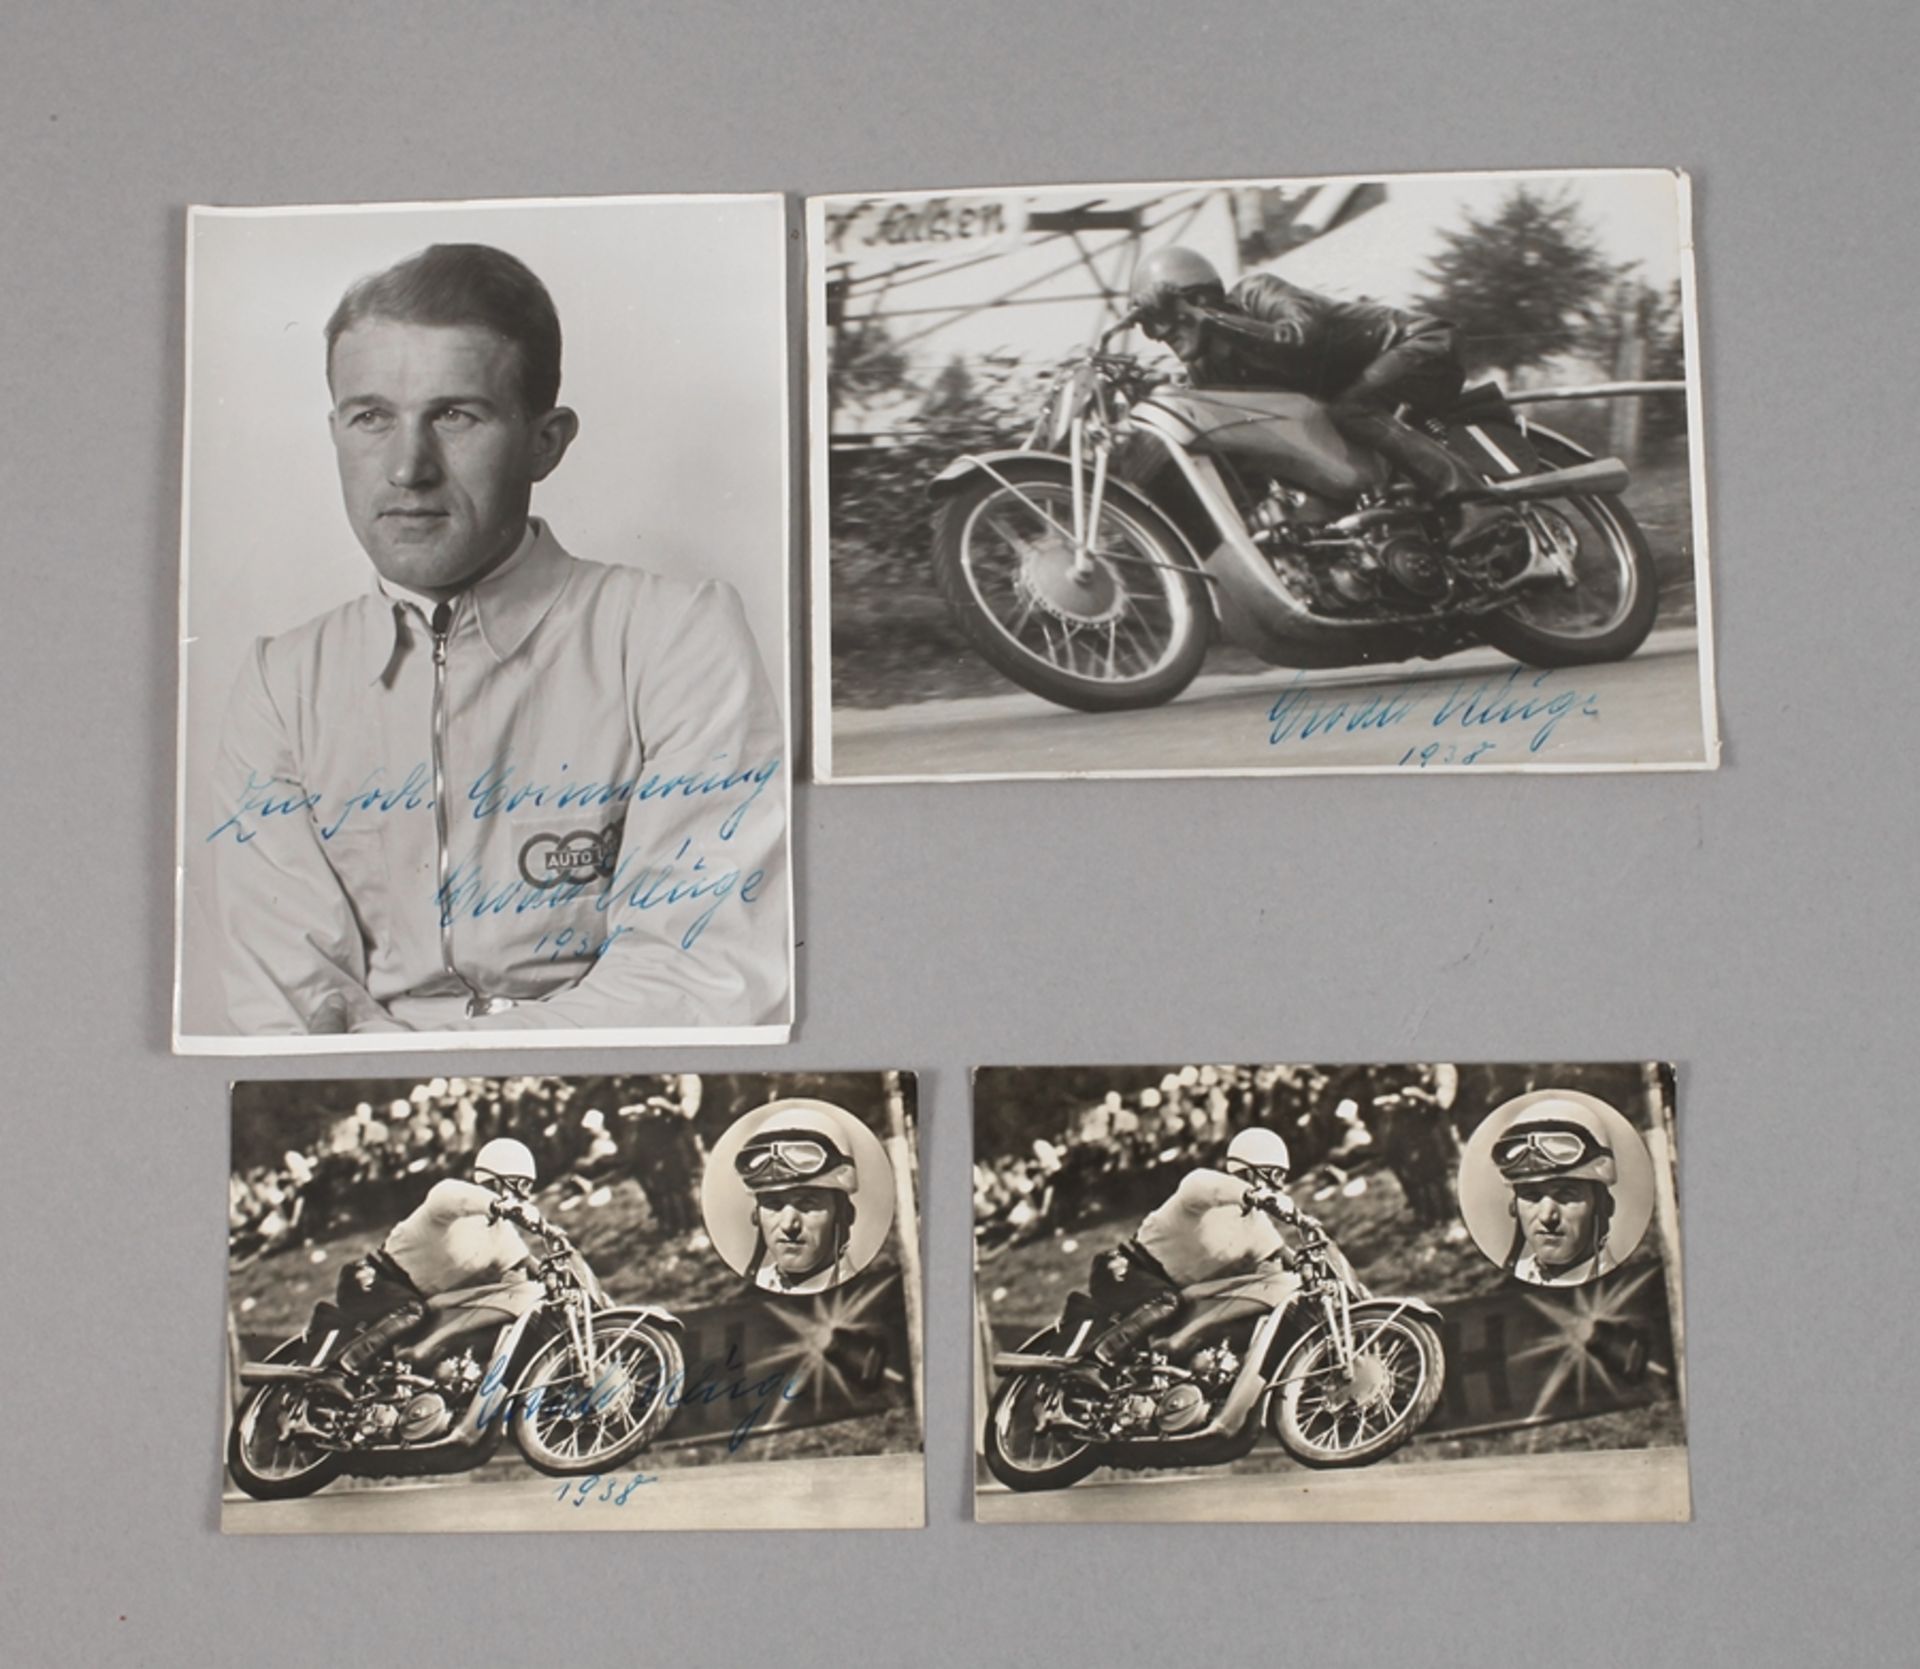 Autogramme Ewald KlugeDeutscher Motorradmeister 1936 und 1937 auf Auto-Union-DKW, auf zwei